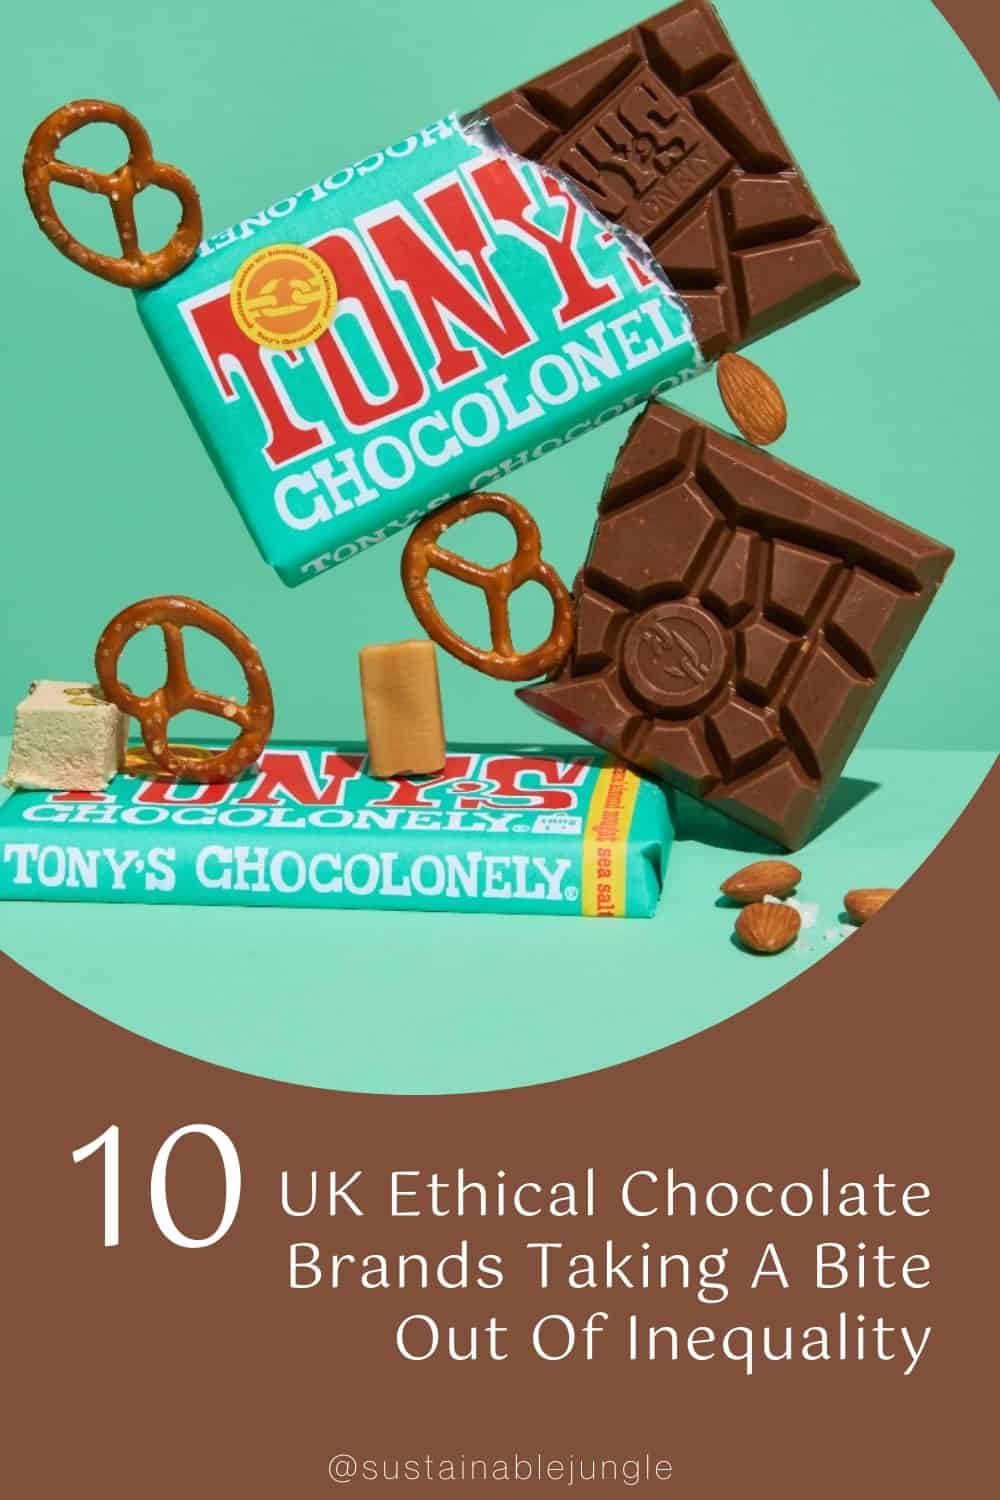 10个英国道德巧克力品牌打破不平等#欧洲伦理巧克力#欧洲伦理纯素食巧克力#欧洲伦理巧克力品牌#欧洲伦理巧克力#可持续巧克力#可持续巧克力品牌#可持续巧克力包装#可持续巧克力棒#可持续巧克力#公平贸易巧克力#生态友好巧克力#可持续丛林图片来自托尼巧克力